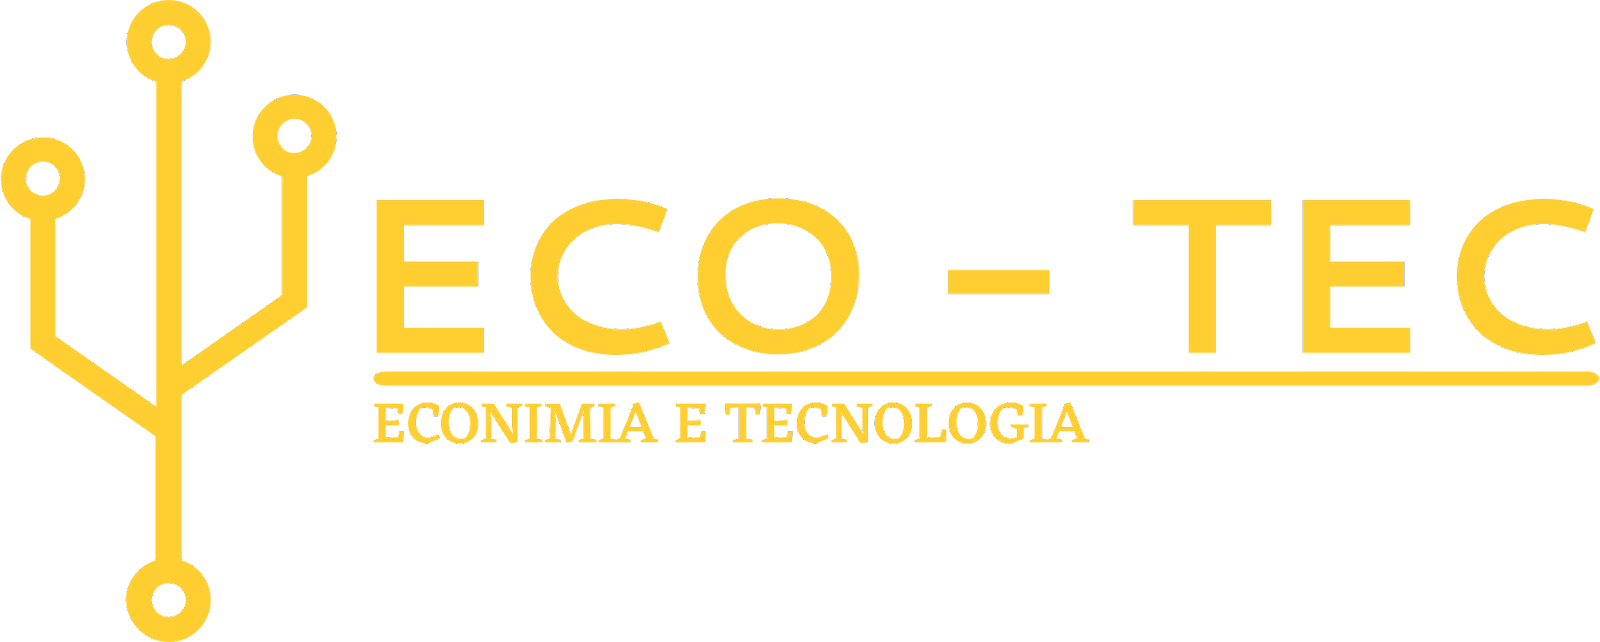 Eco - Tec